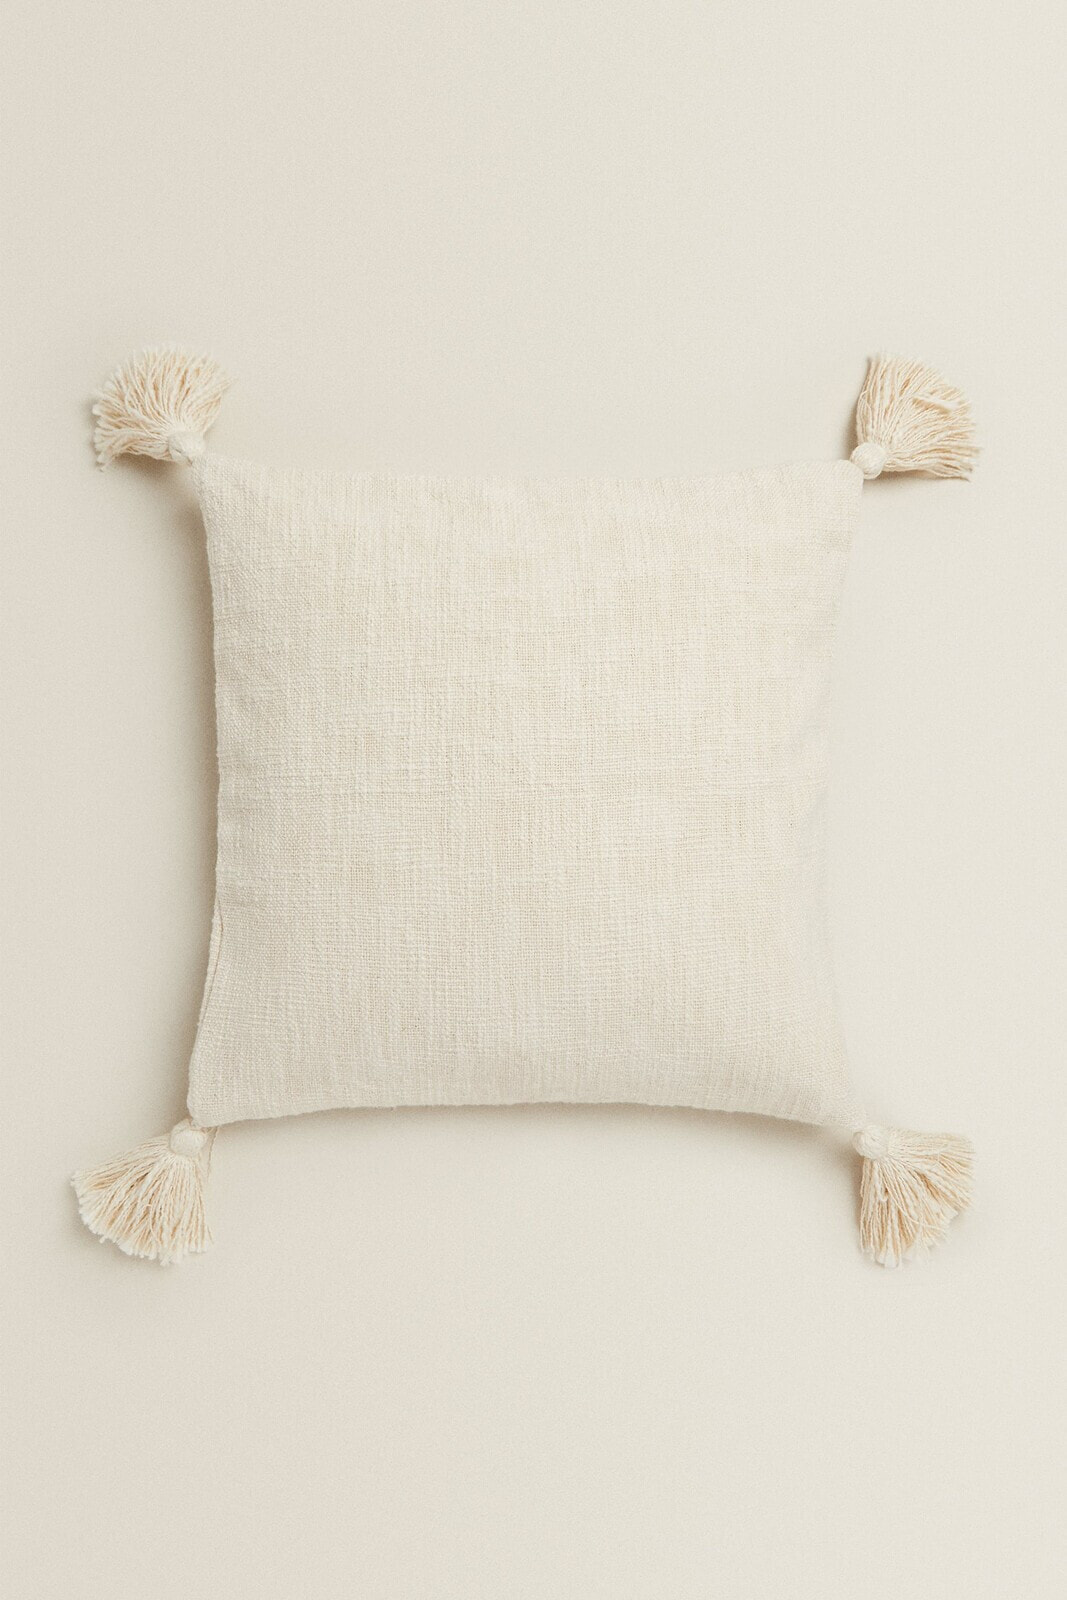 Tassel cushion cover